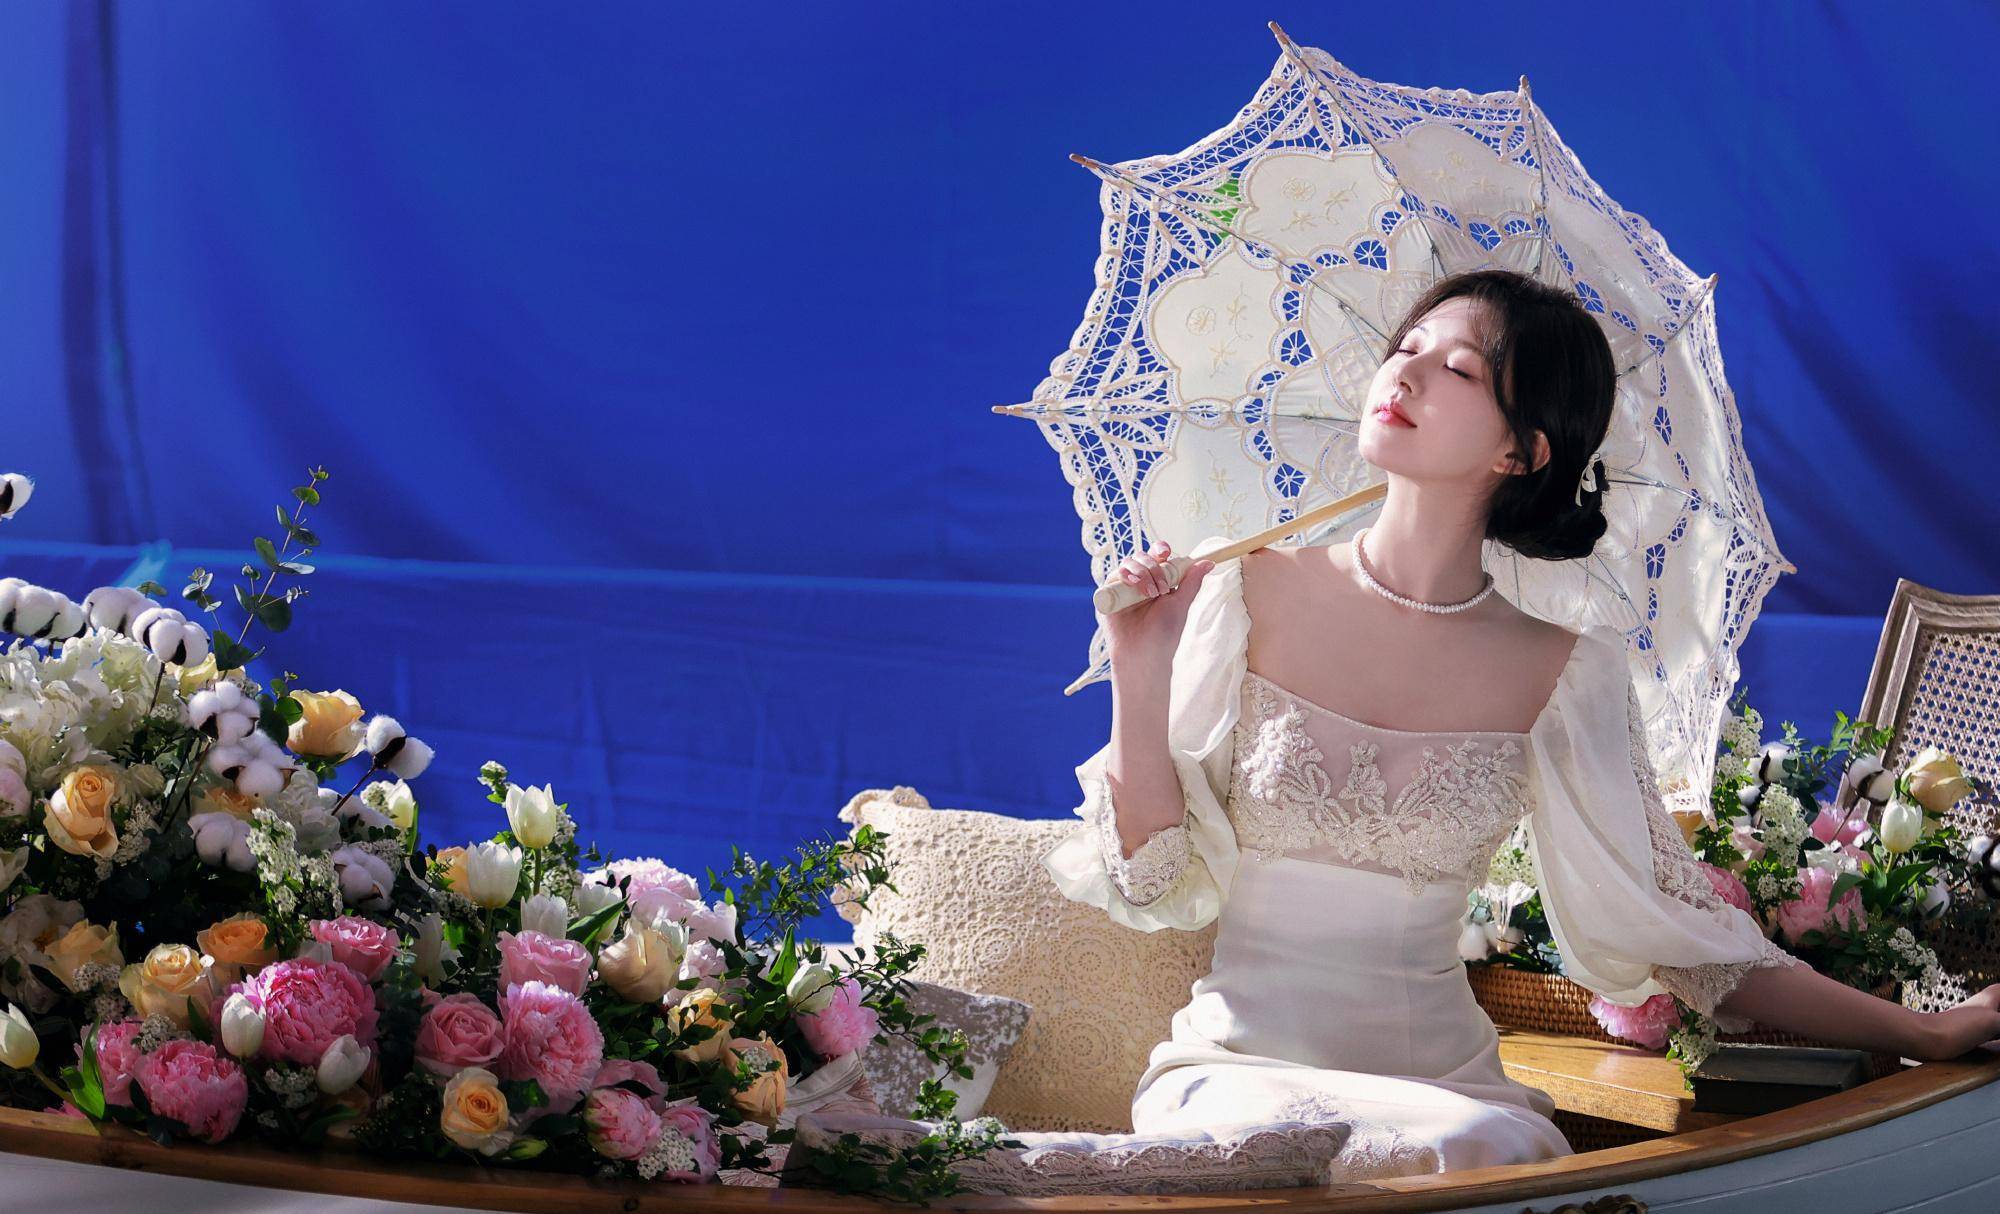 赵露思儿童节商务照,白色时尚纱裙搭配简单的扭发和首饰,温馨又温馨